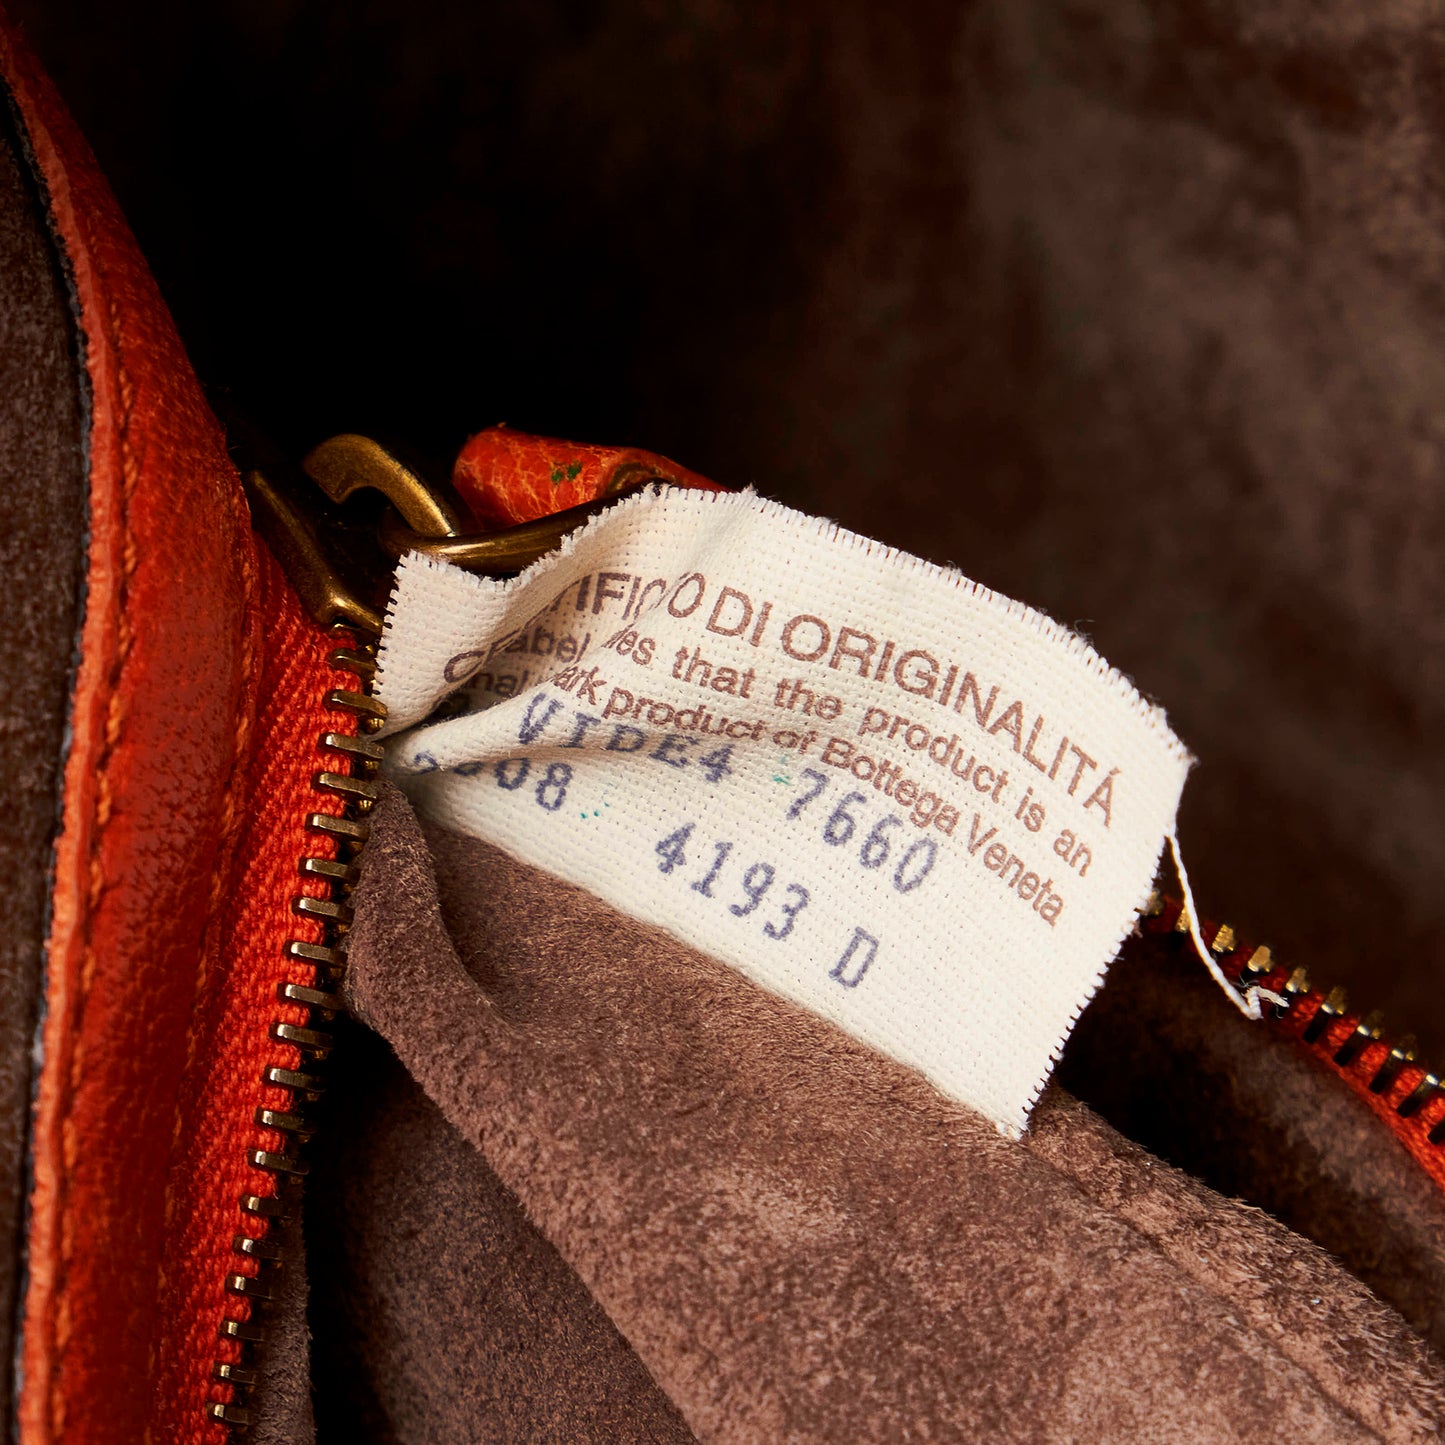 Intrecciato Leather Tote Bag